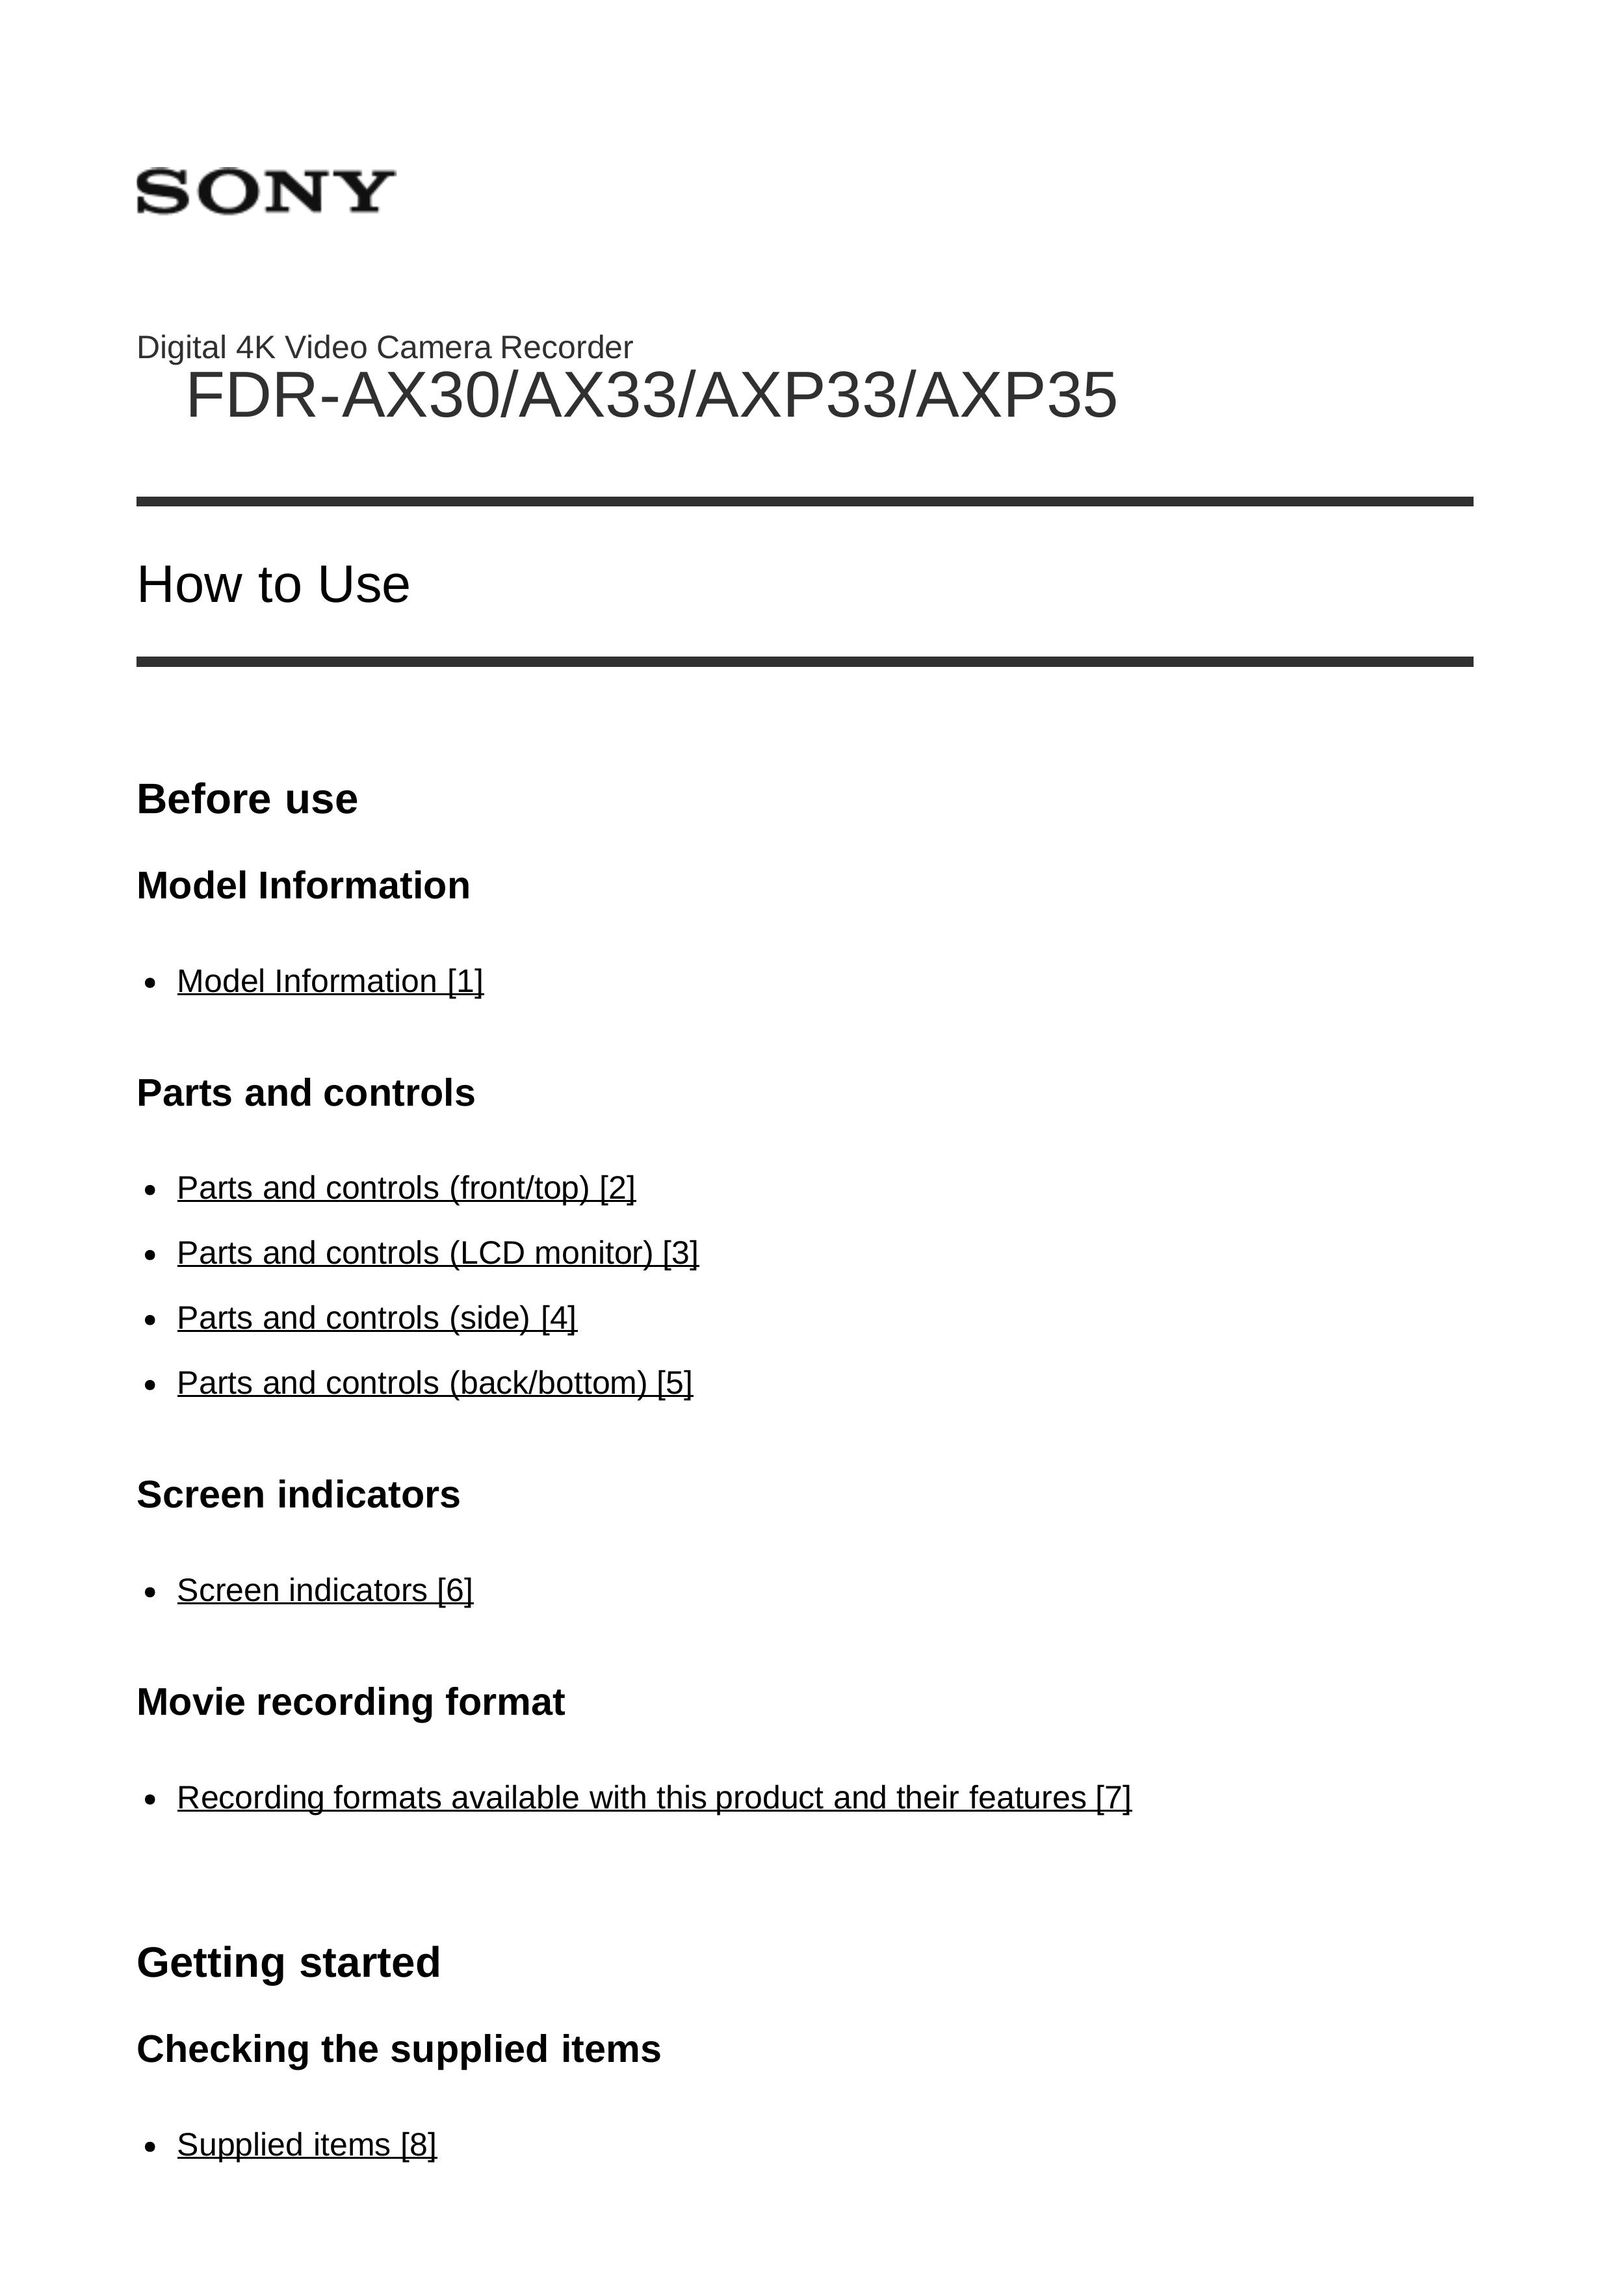 Sony Frd-ax30 DVR User Manual